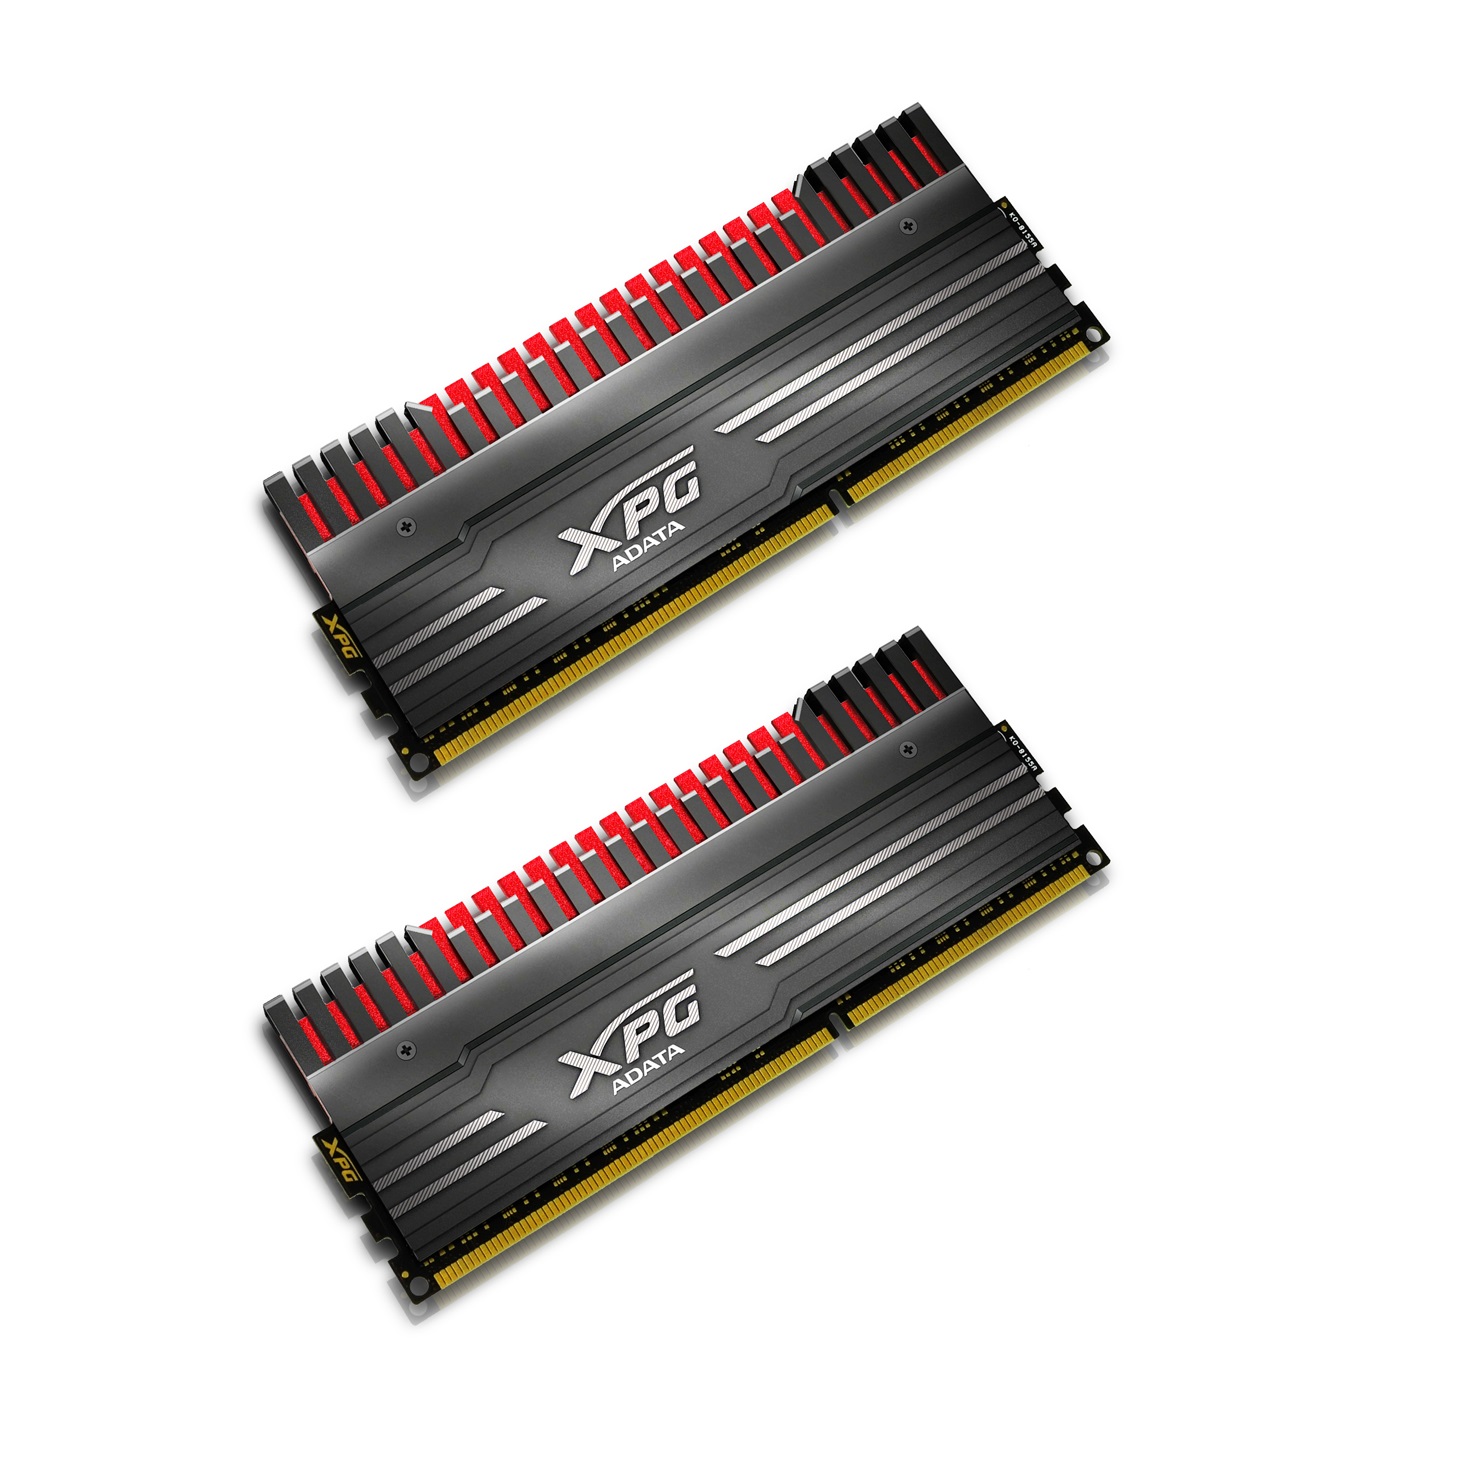 Immagine pubblicata in relazione al seguente contenuto: Overclocking: ADATA annuncia le memorie RAM XPG V3 DDR3 3100 | Nome immagine: news21448_ADATA-XPG-V3-DDR3-3100_2.jpg